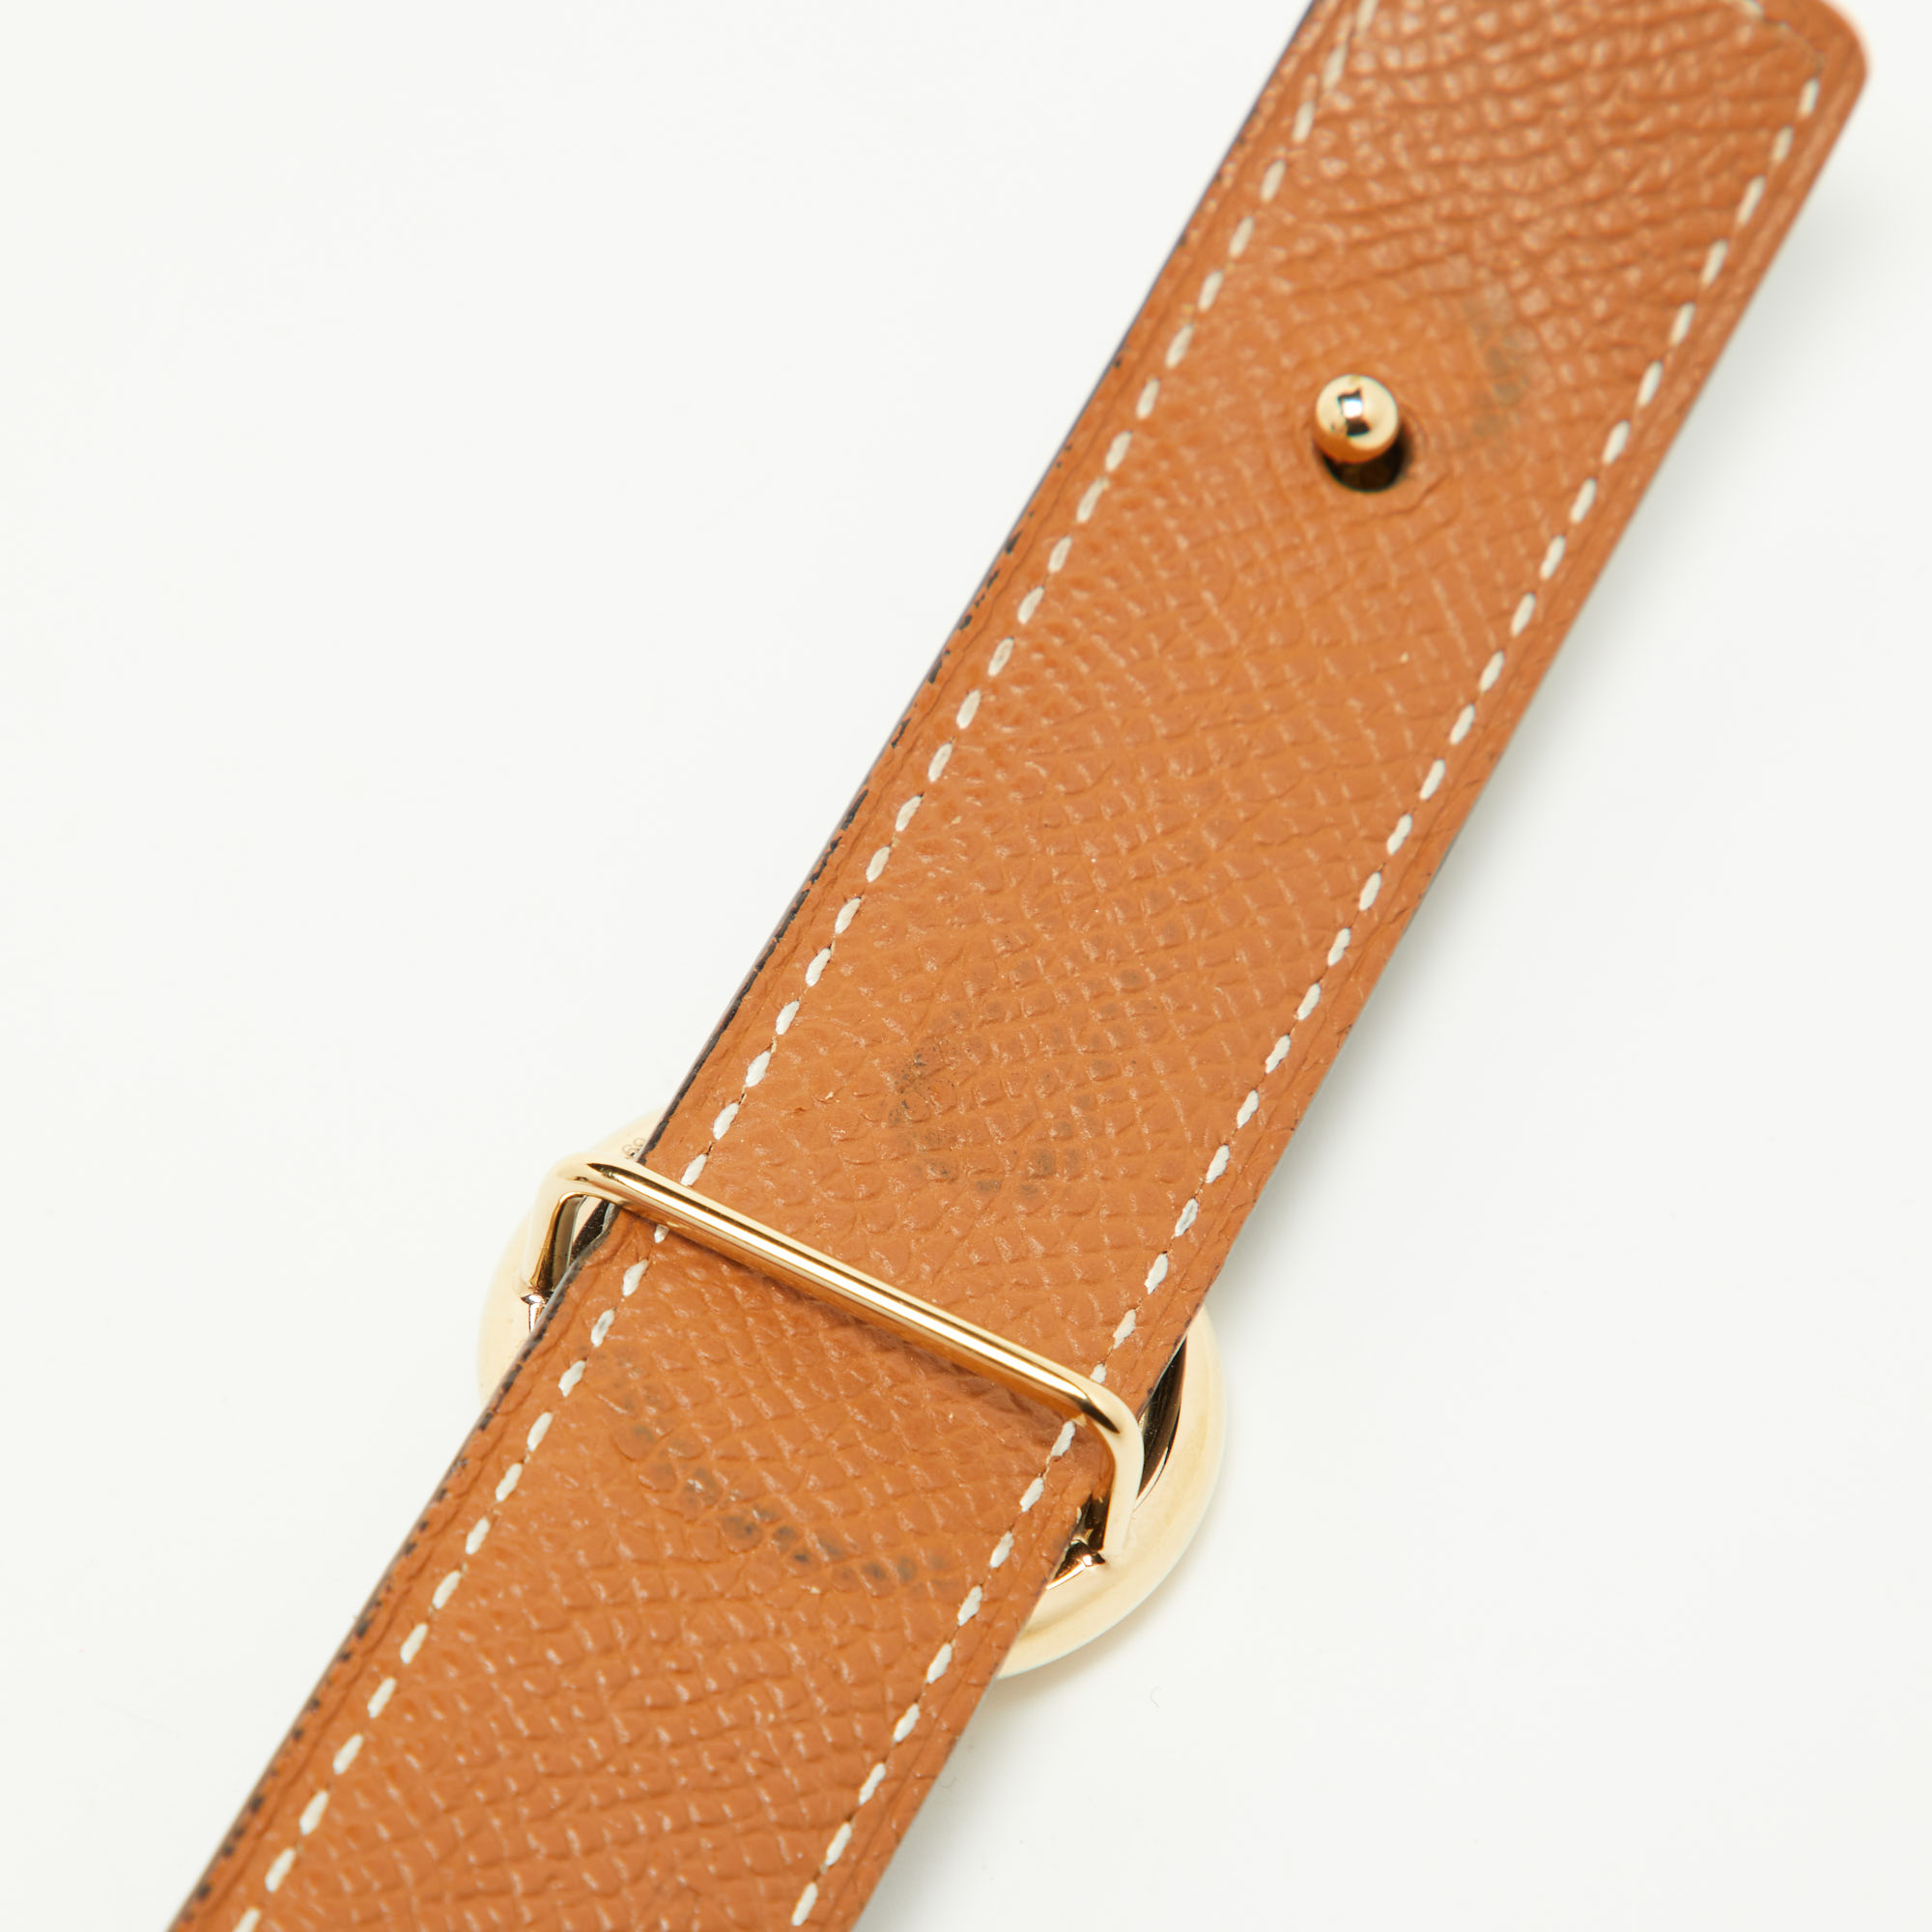 Hermes Black/Gold Swift And Epsom Leather Mors Reversible Belt 70CM